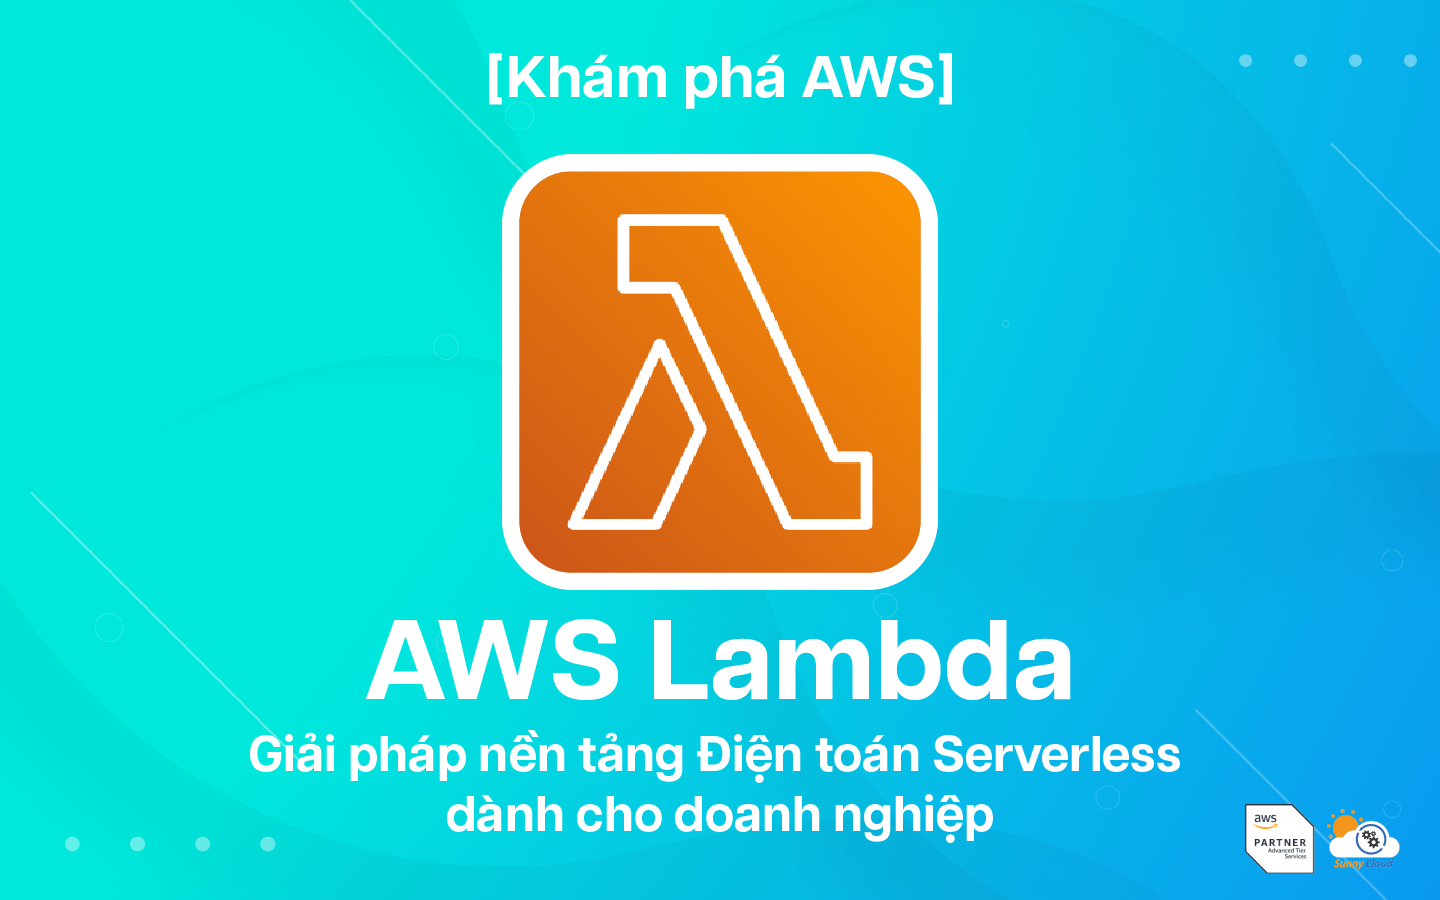 AWS Lambda – Giải pháp nền tảng Điện toán Serverless (Phi máy chủ)